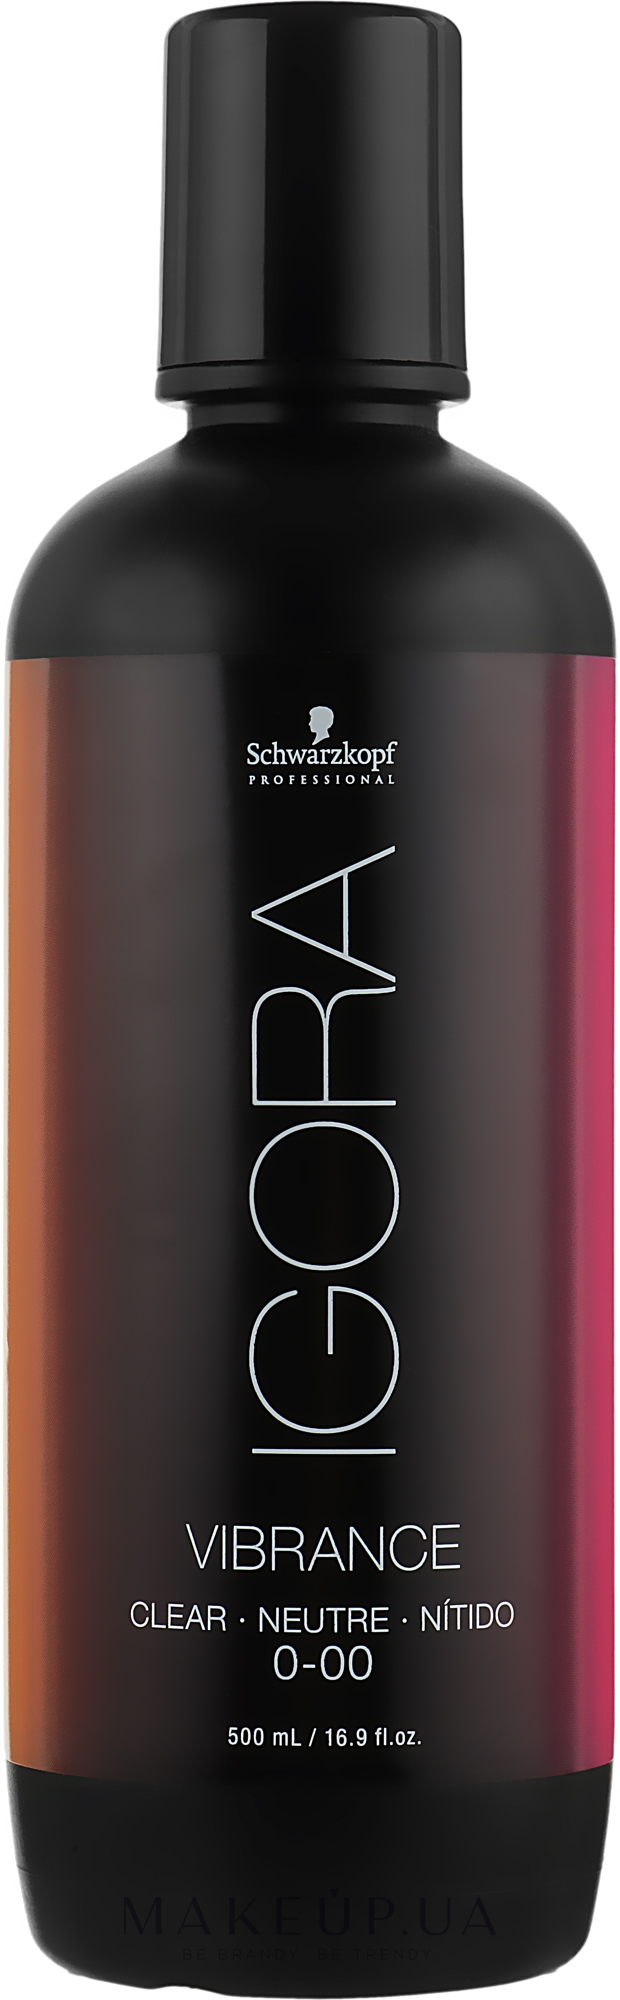 Розчинник для фарби для волосся - Schwarzkopf Professional Igora Vibrance CLear 0-00 — фото 0-00 Clear